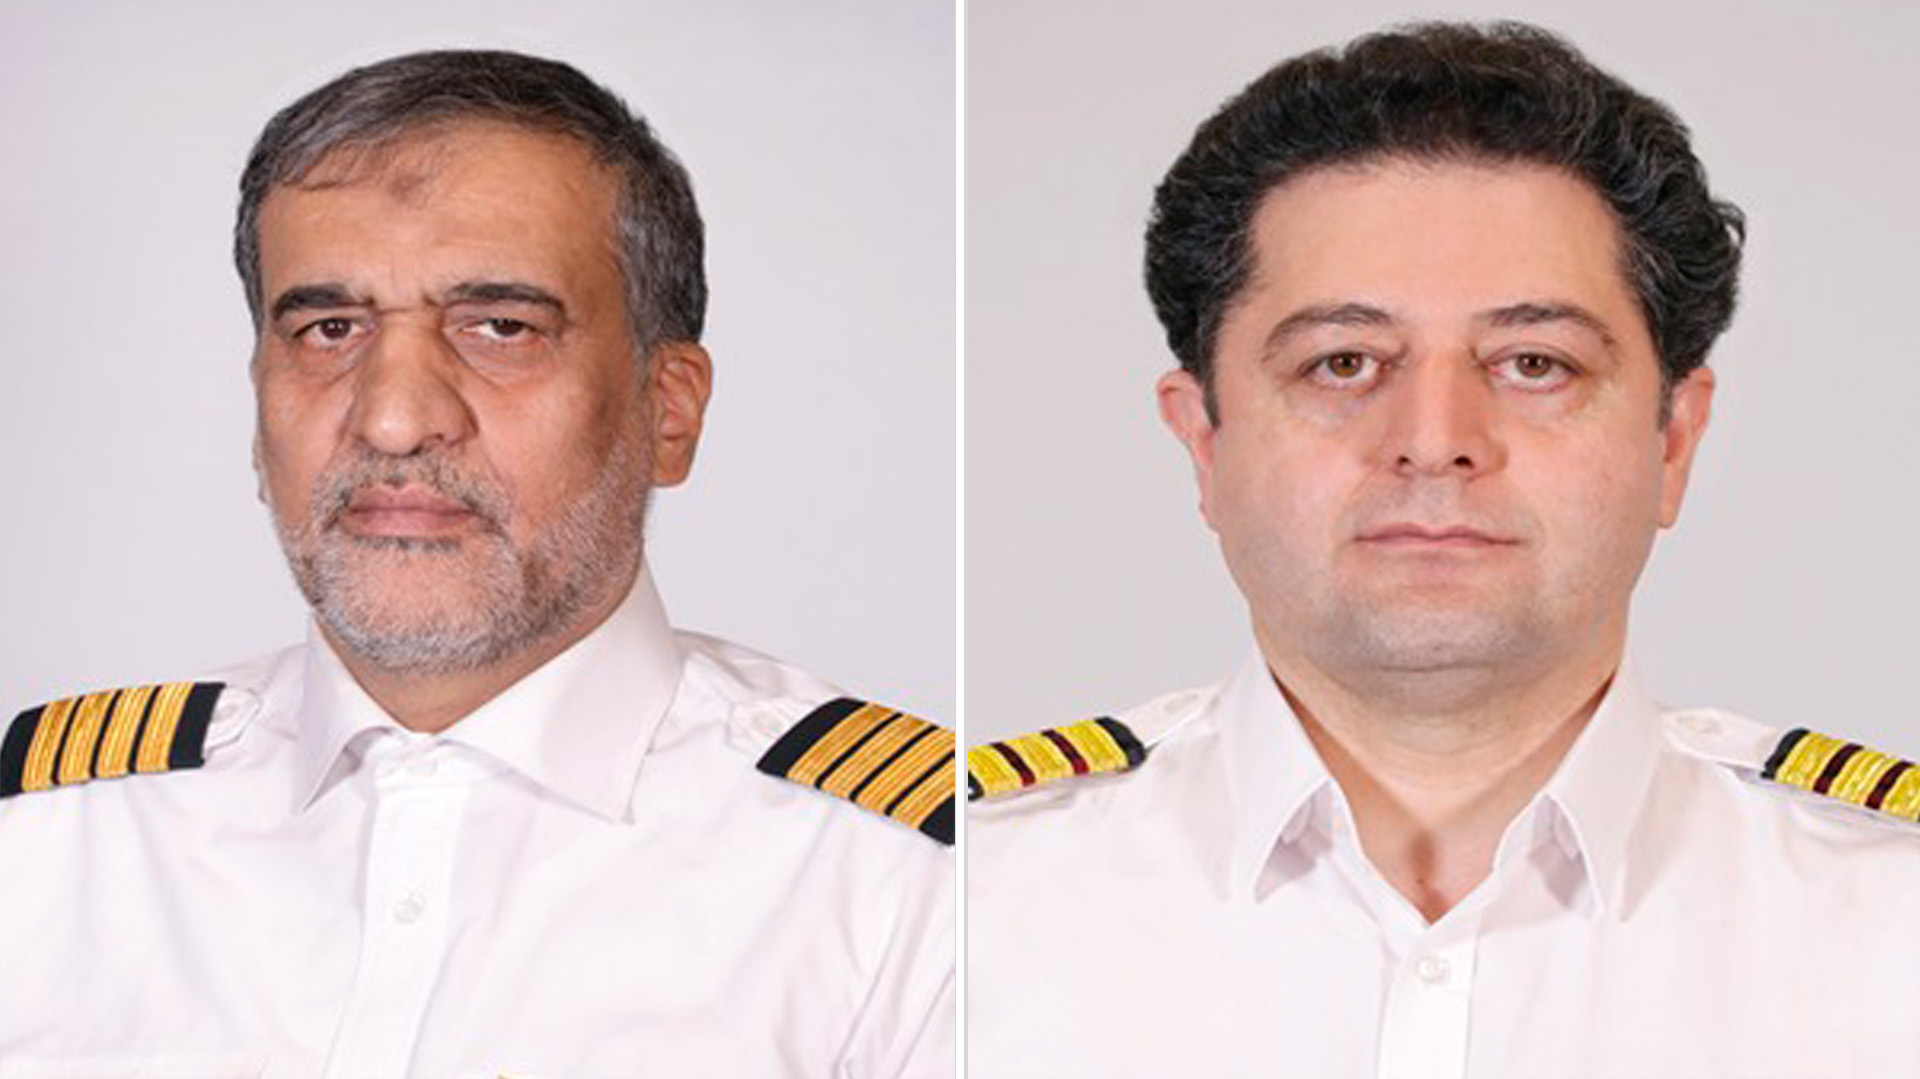 El juez Villena destacó los viajes a Damasco (Siria) del piloto Gholamreza Ghasemi (en la foto a la izquierda)
